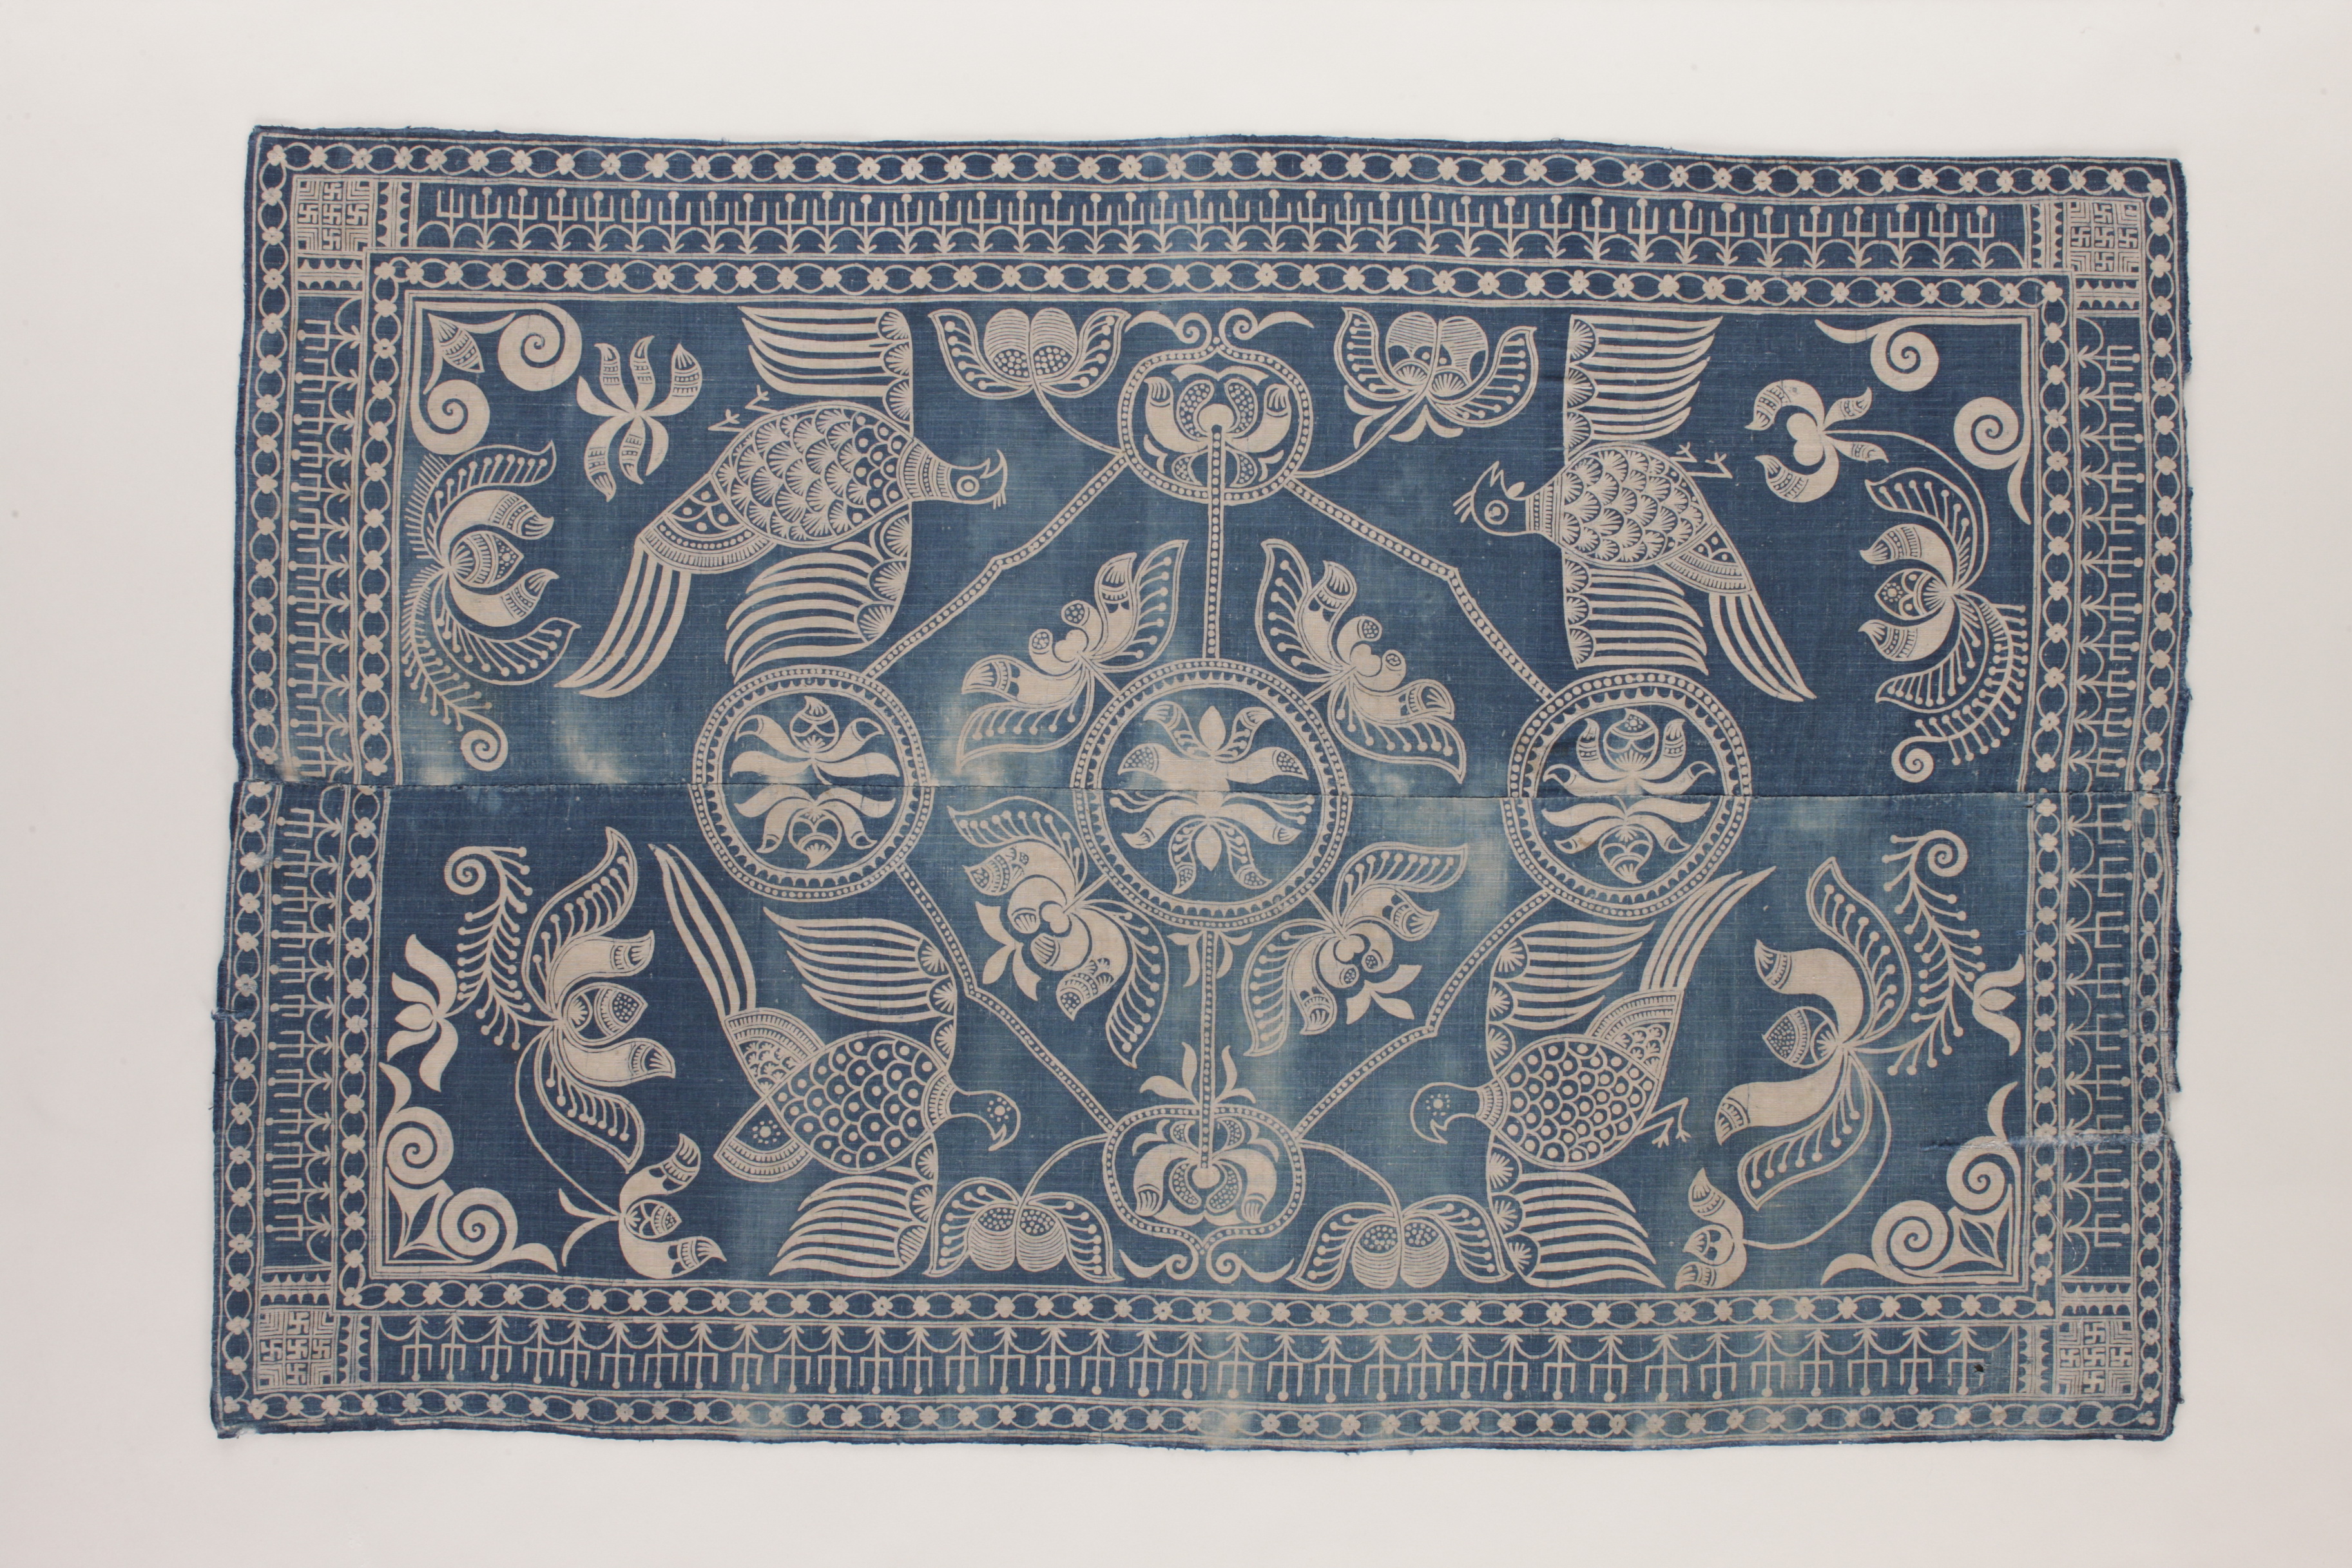 Miao batik quilt cover from Danzhai